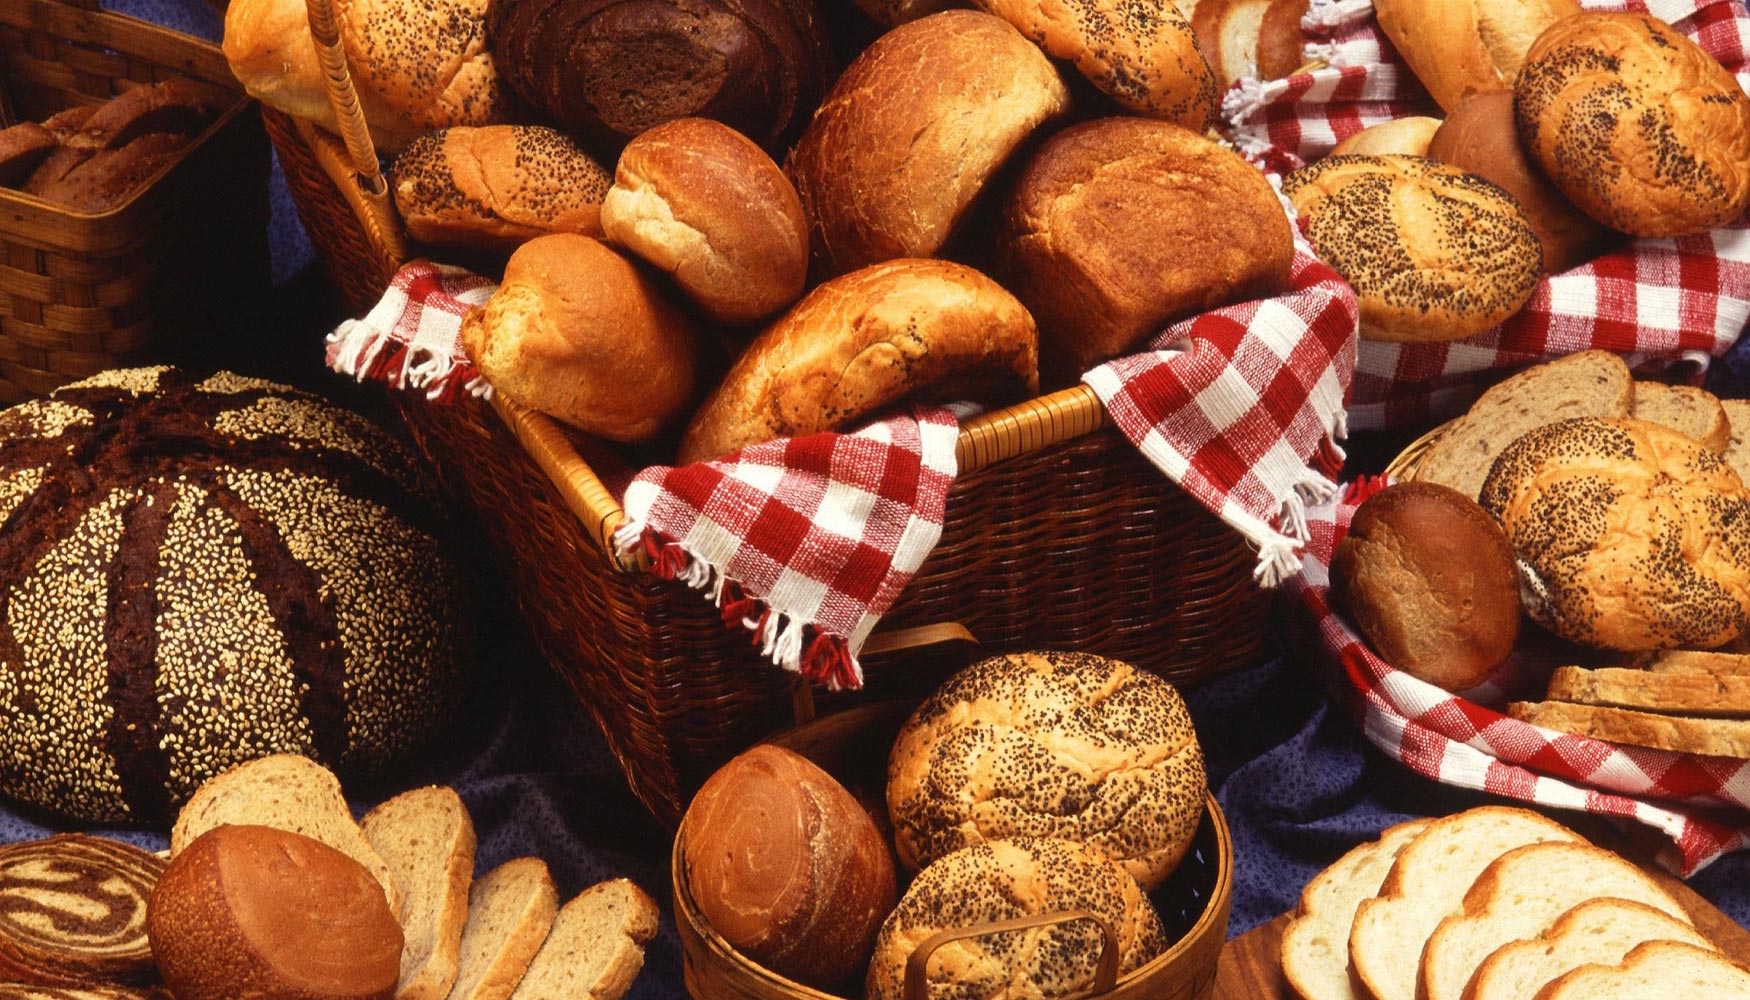 El pan tradicional sigue siendo el ms vendido, aunque el pan de centeno o de semillas ocupa un lugar importante en el mercado...